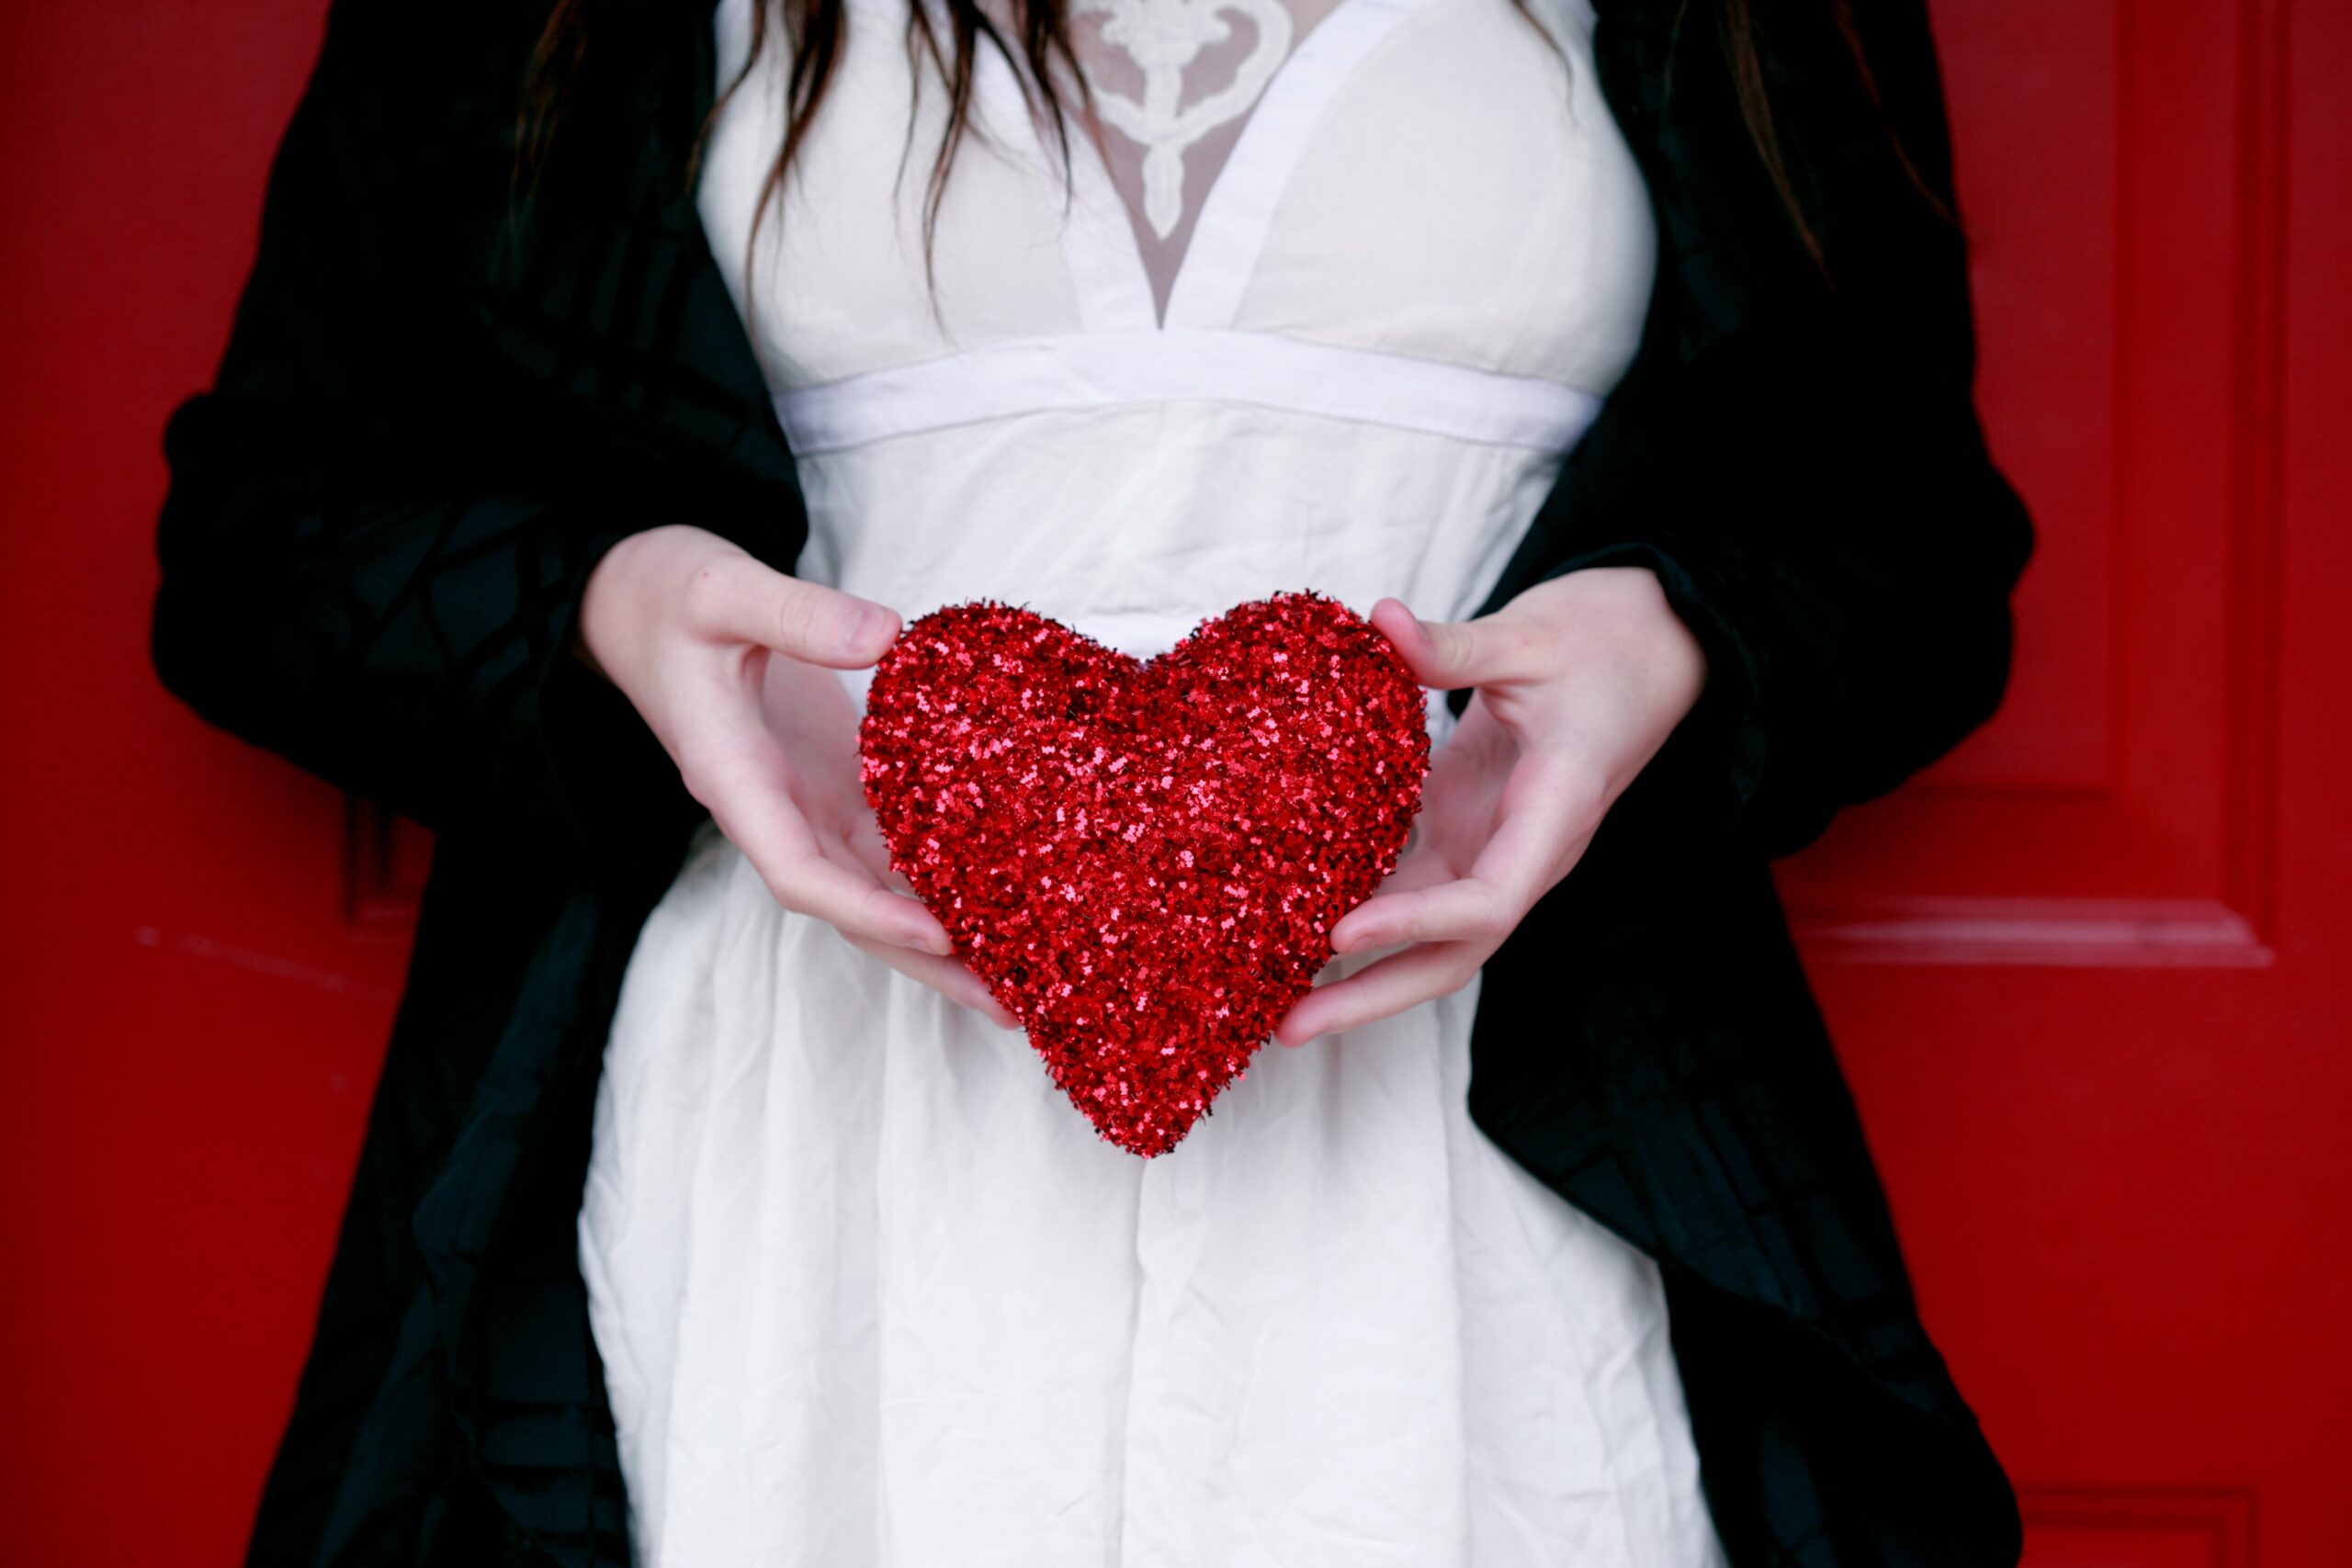 Consigli24  Regali di San Valentino per lei: conquistala con amore e  creatività